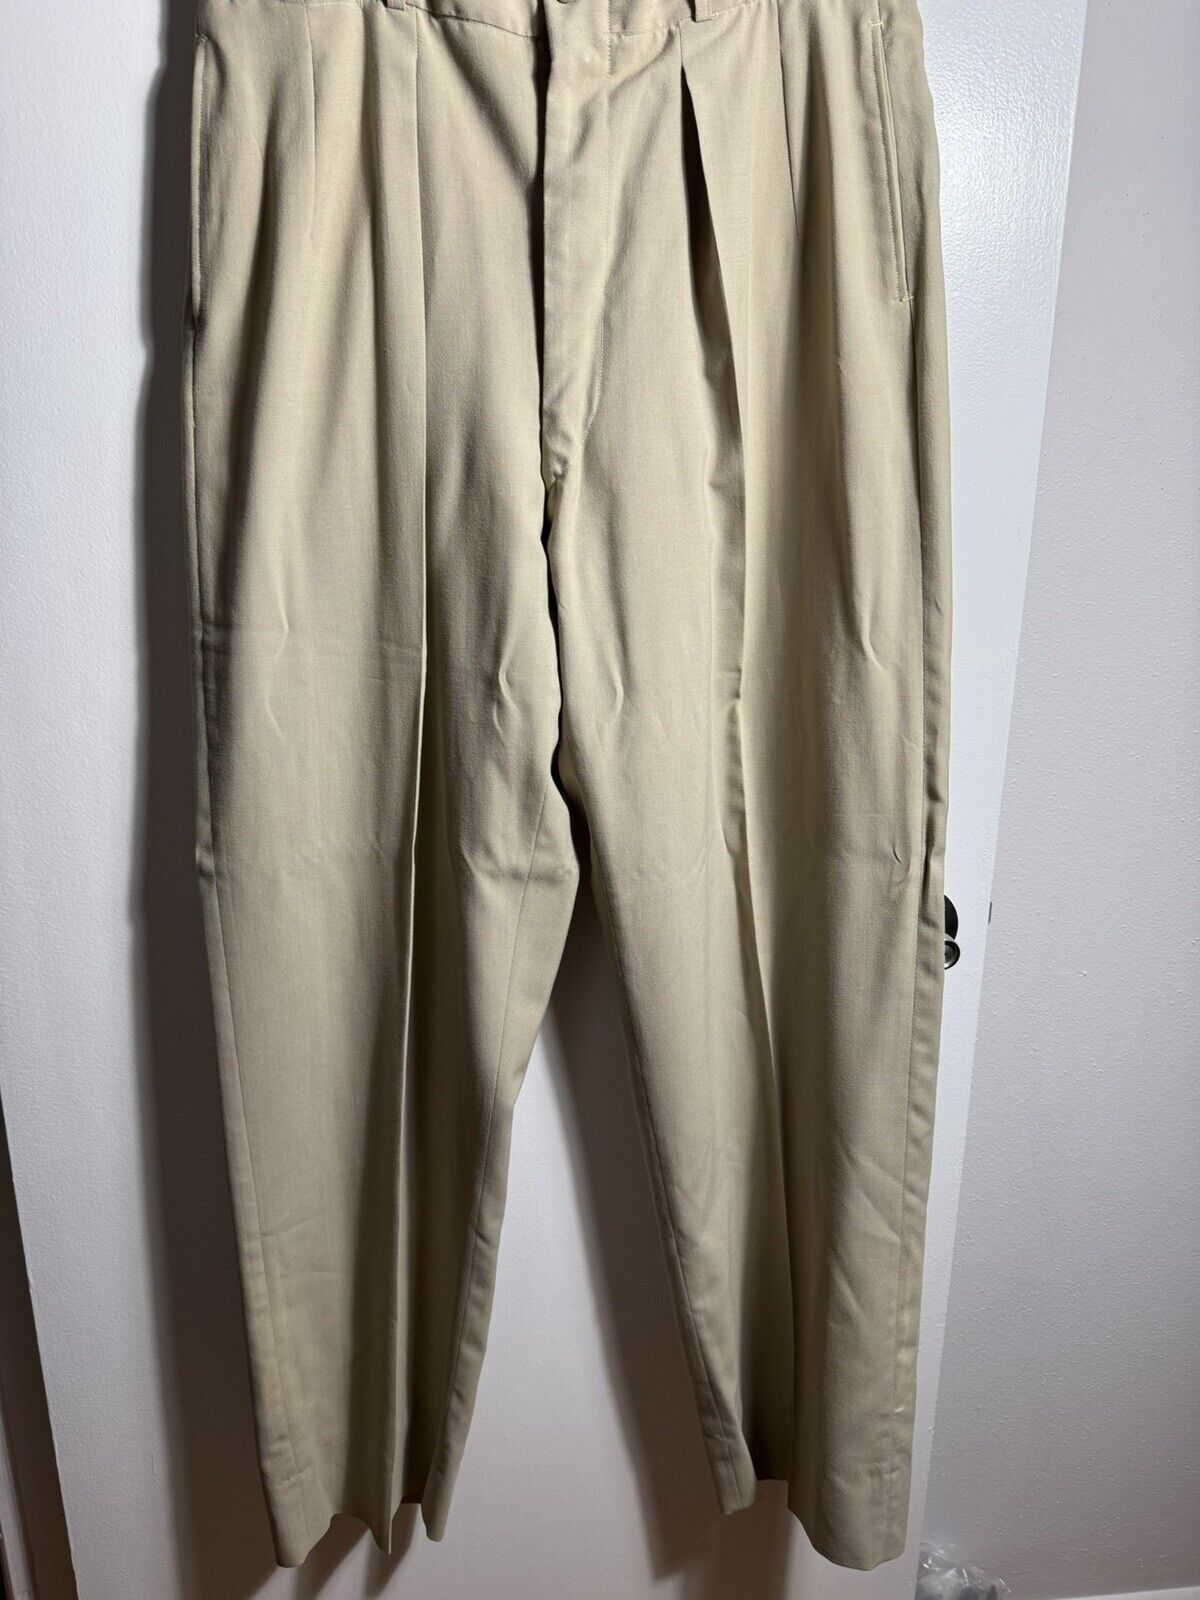 Vintage USAAF Officer uniform pants